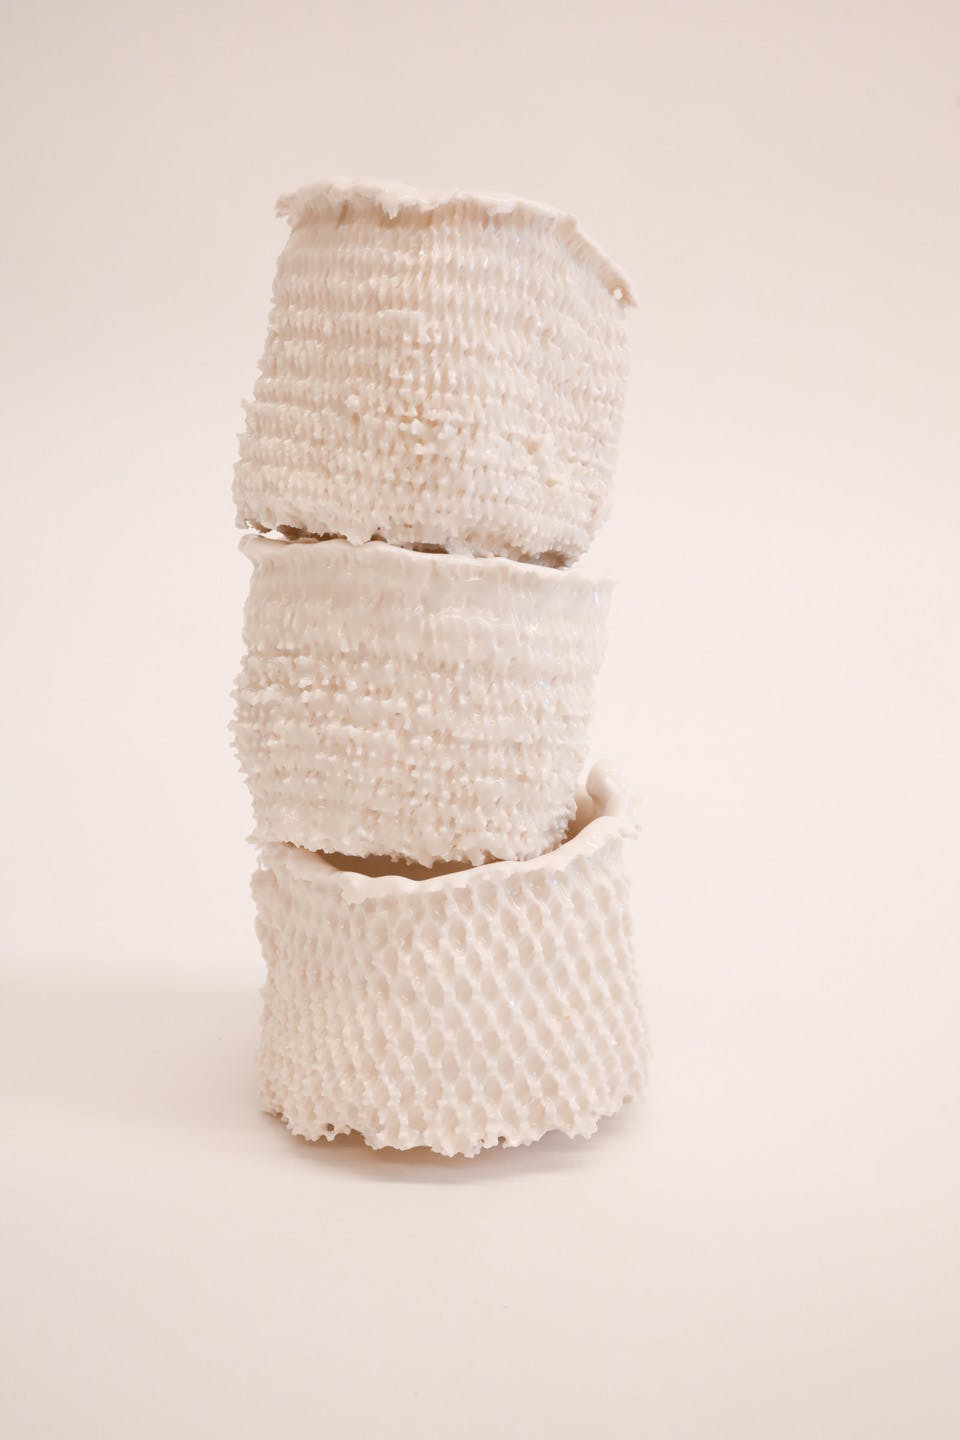 ceramics + weaving: a material exploration